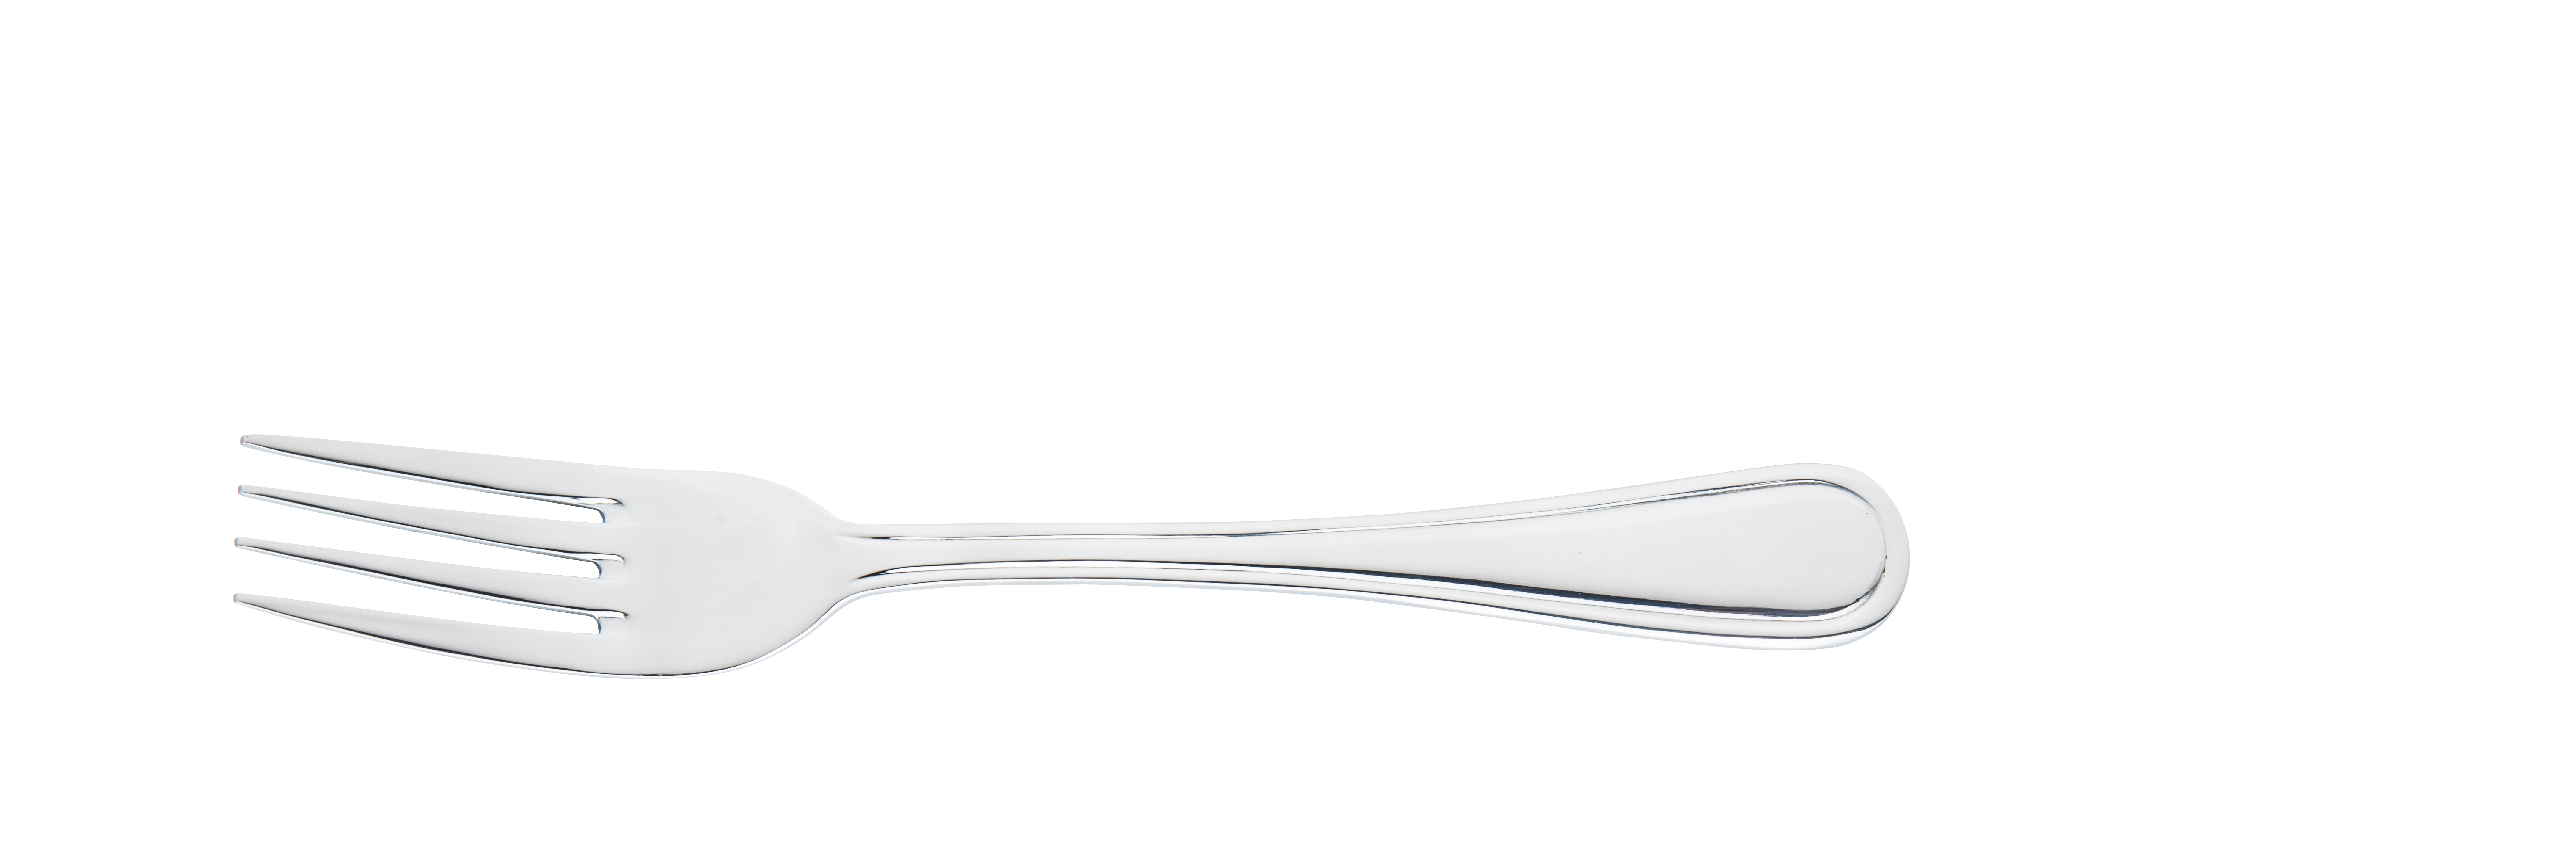 77125 Classic 18/10 vork in between 18,6 cm 1 2 stuks